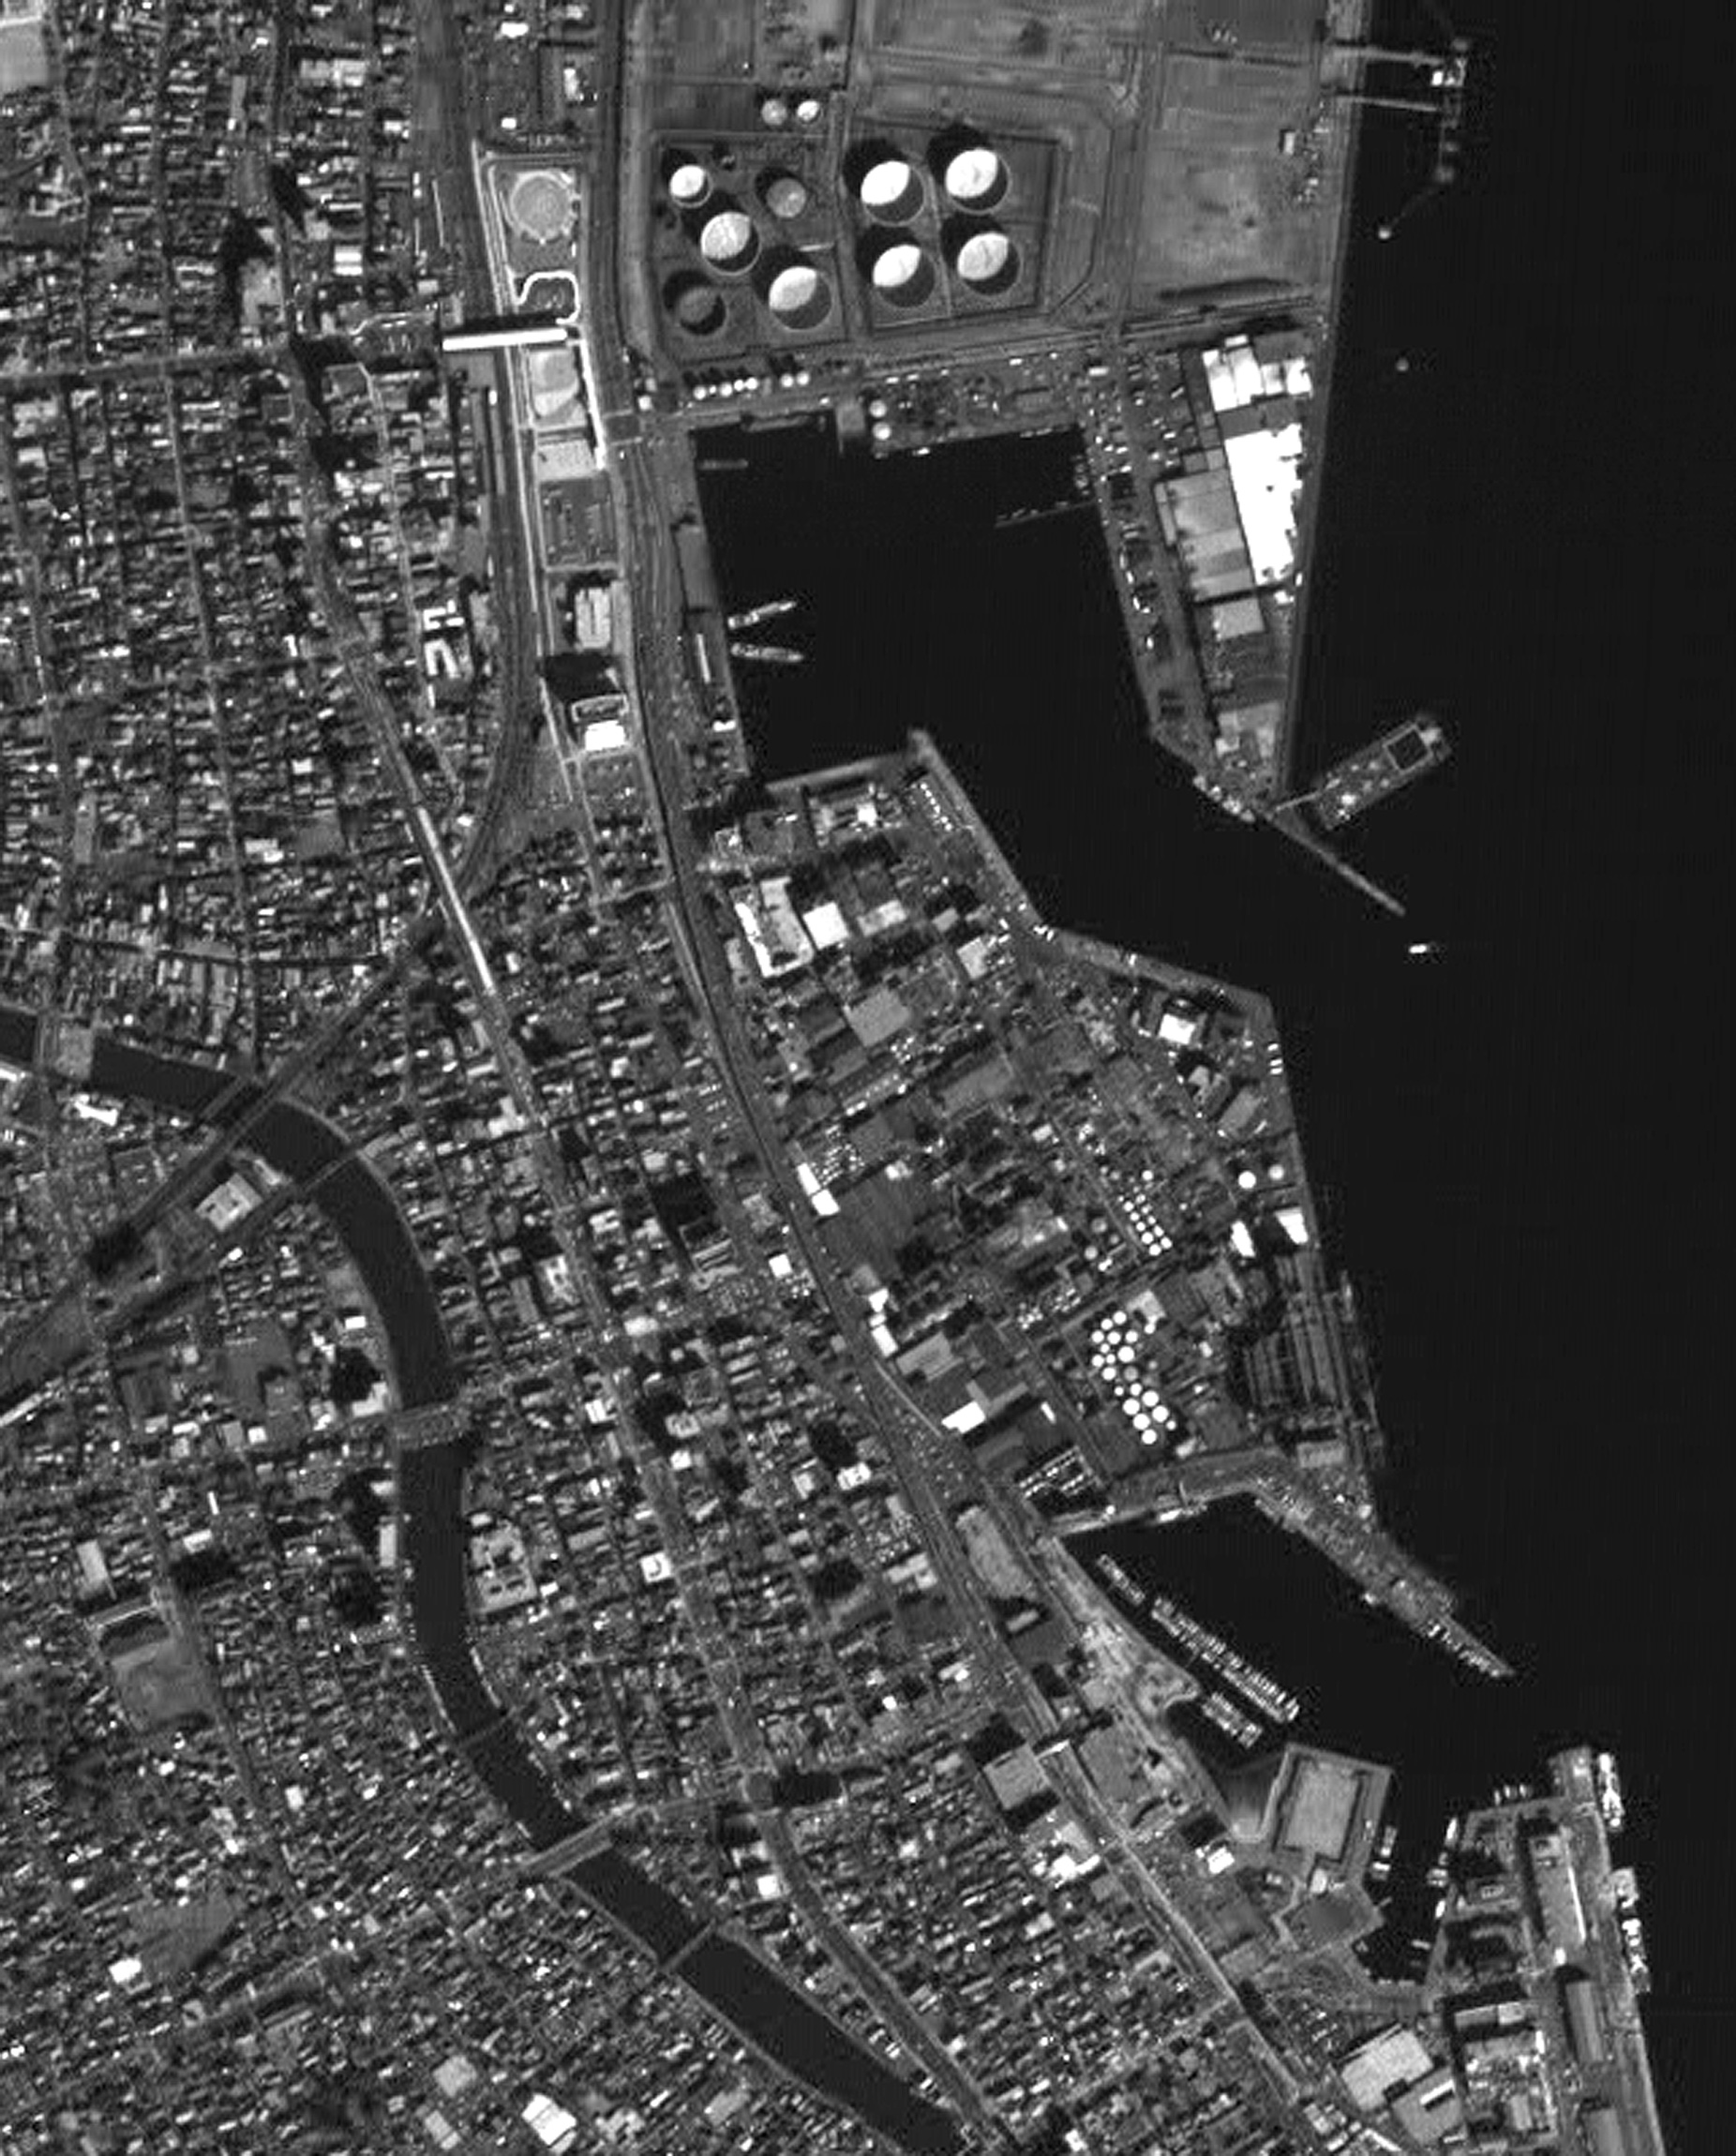 図2: 静岡県清水港(左図枠内部分拡大)